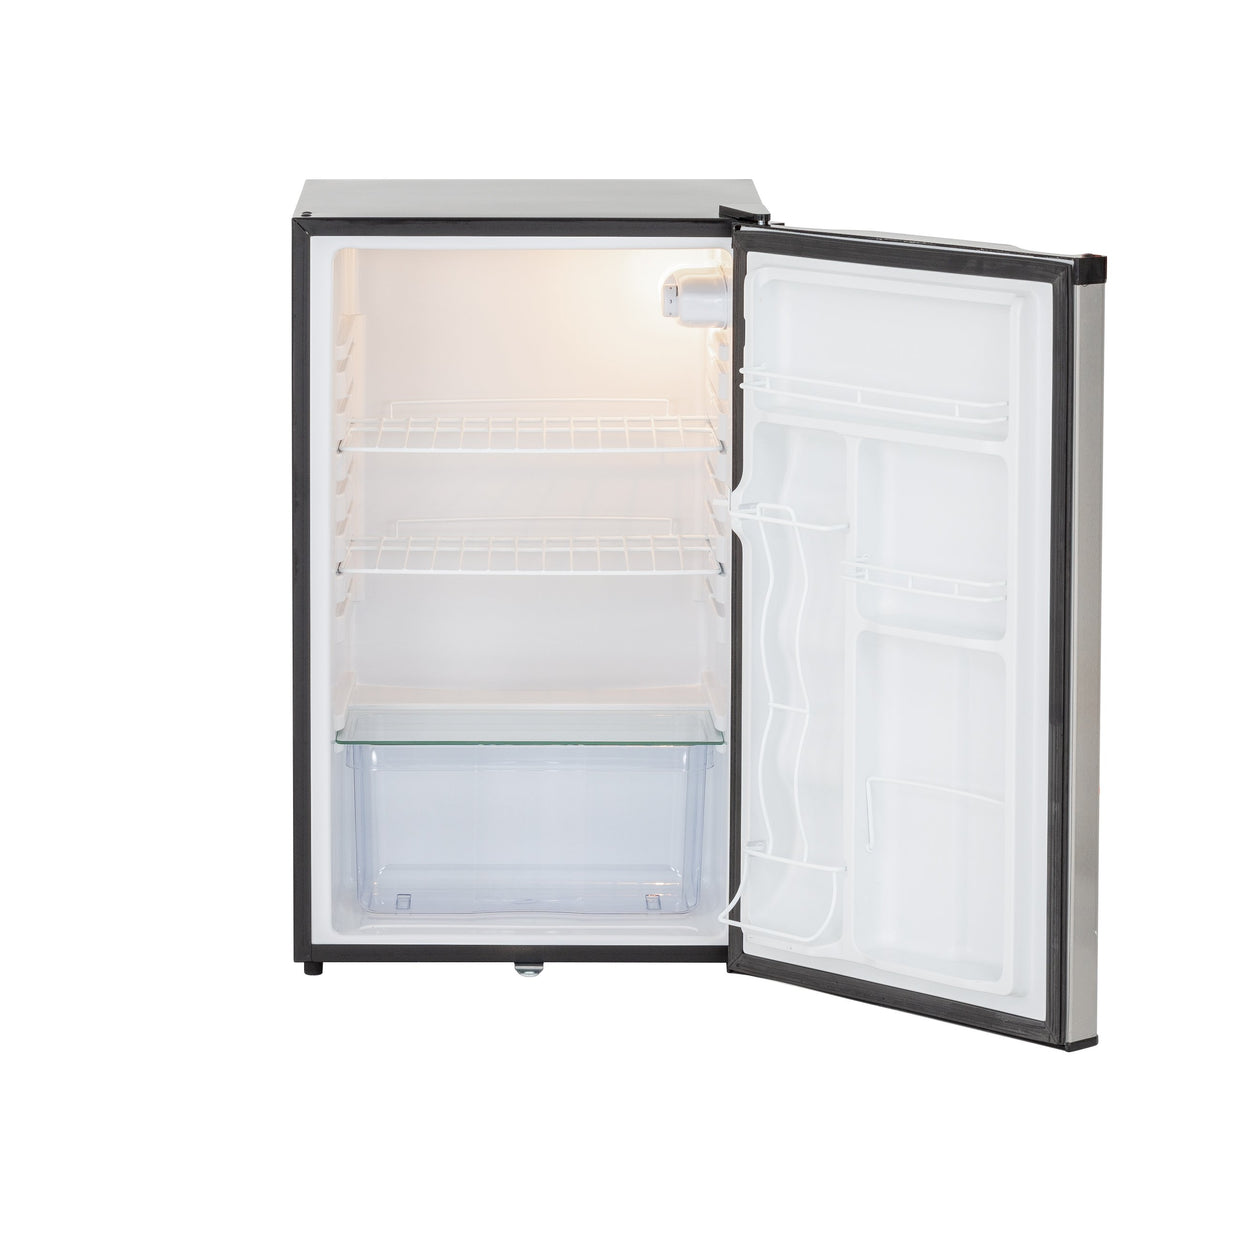 21" 4.2C Compact Refrigerator w/ Reversible Door